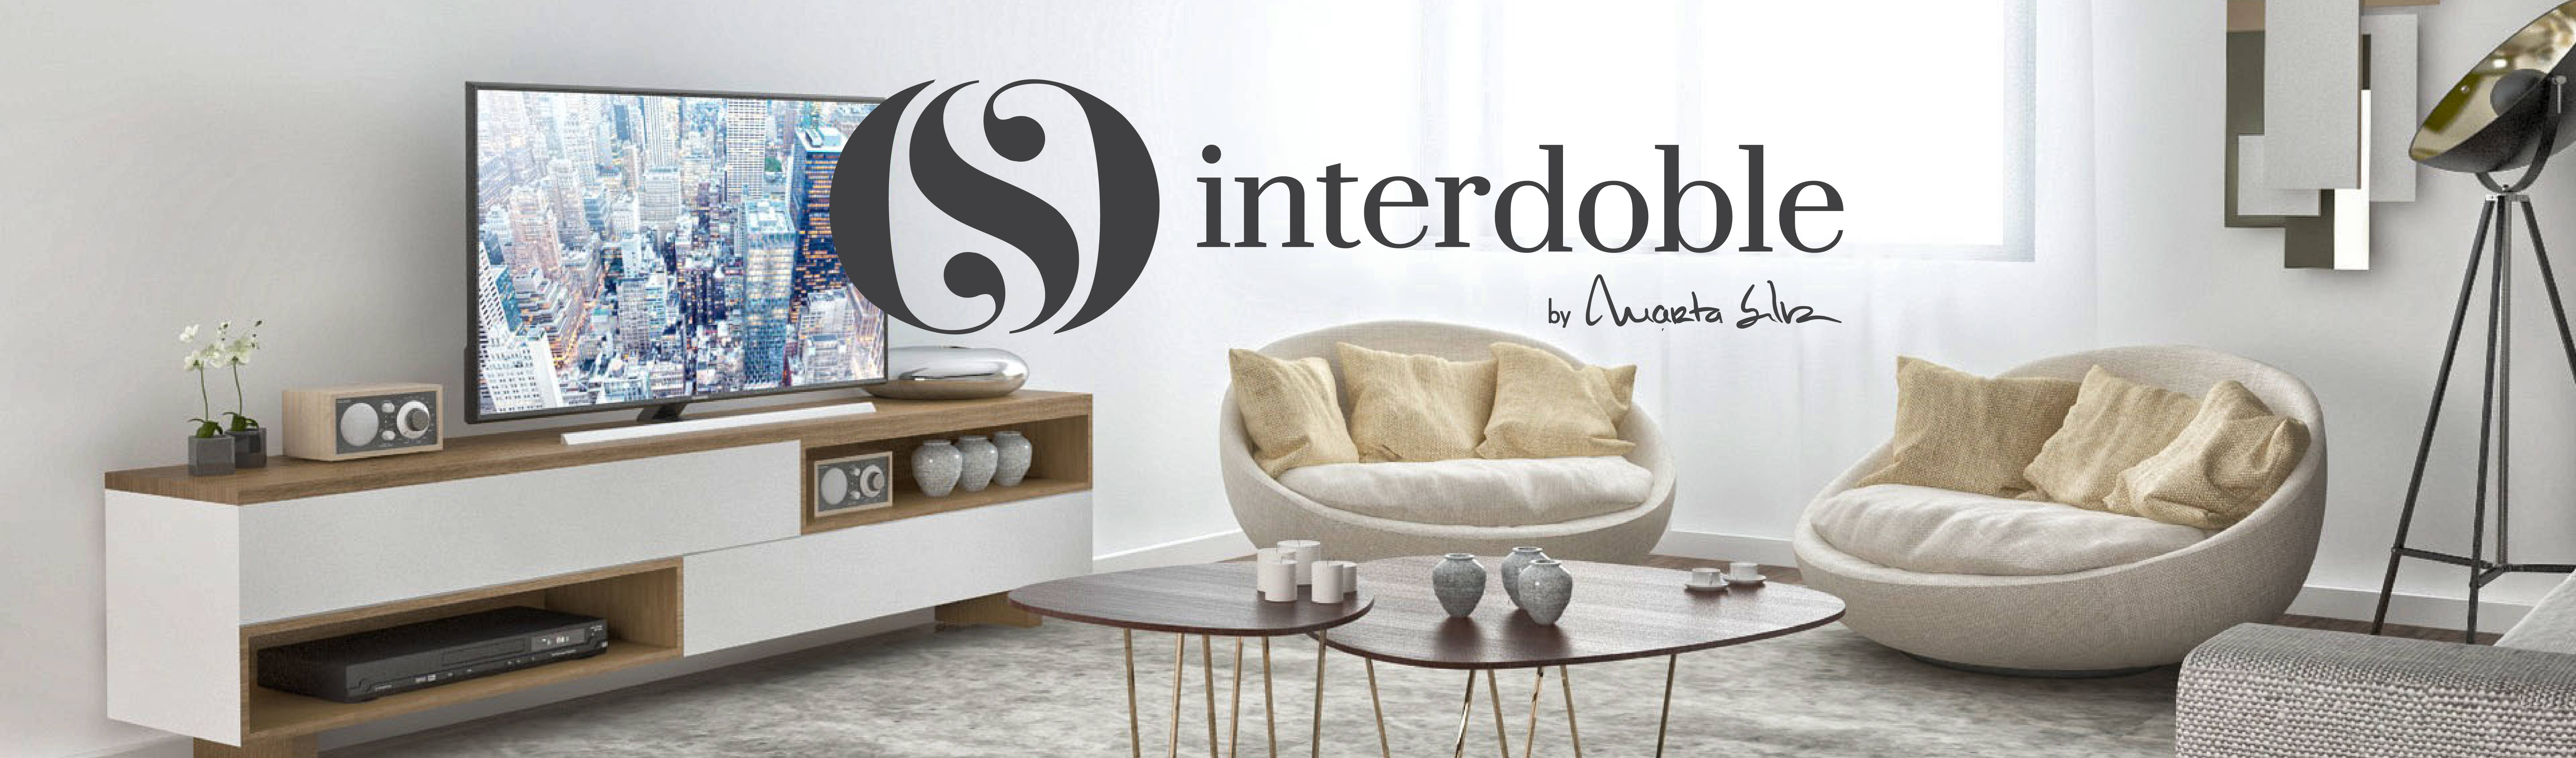 INTERDOBLE BY MARTA SILVA – Design de Interiores